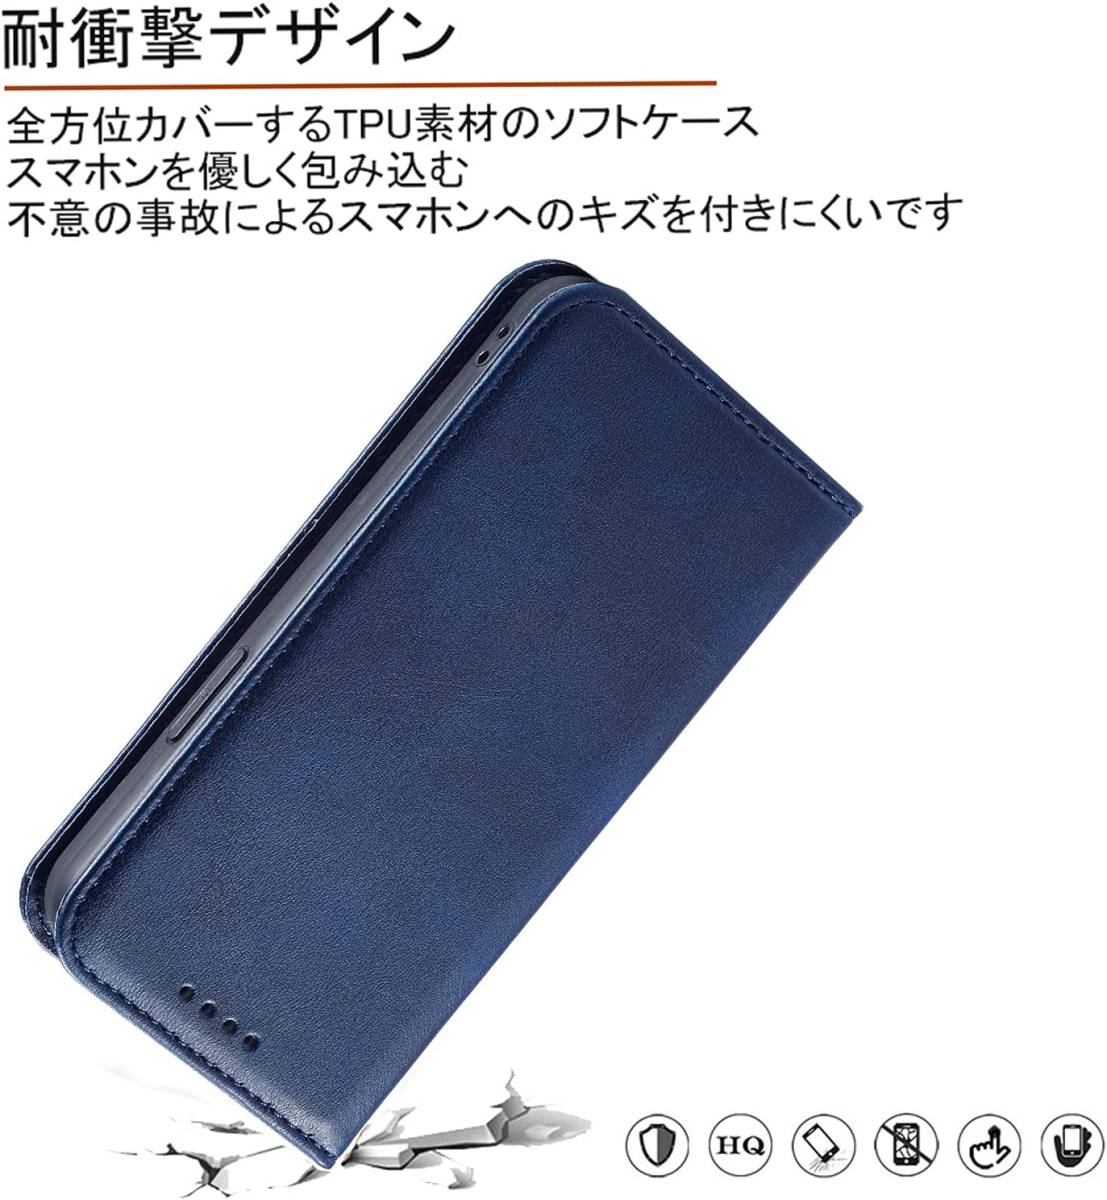 OPPO Reno5 Aケース手帳型 SC-53B 肌触り良い PUレザー ストラップホール付き カード収納 マグネット内蔵 全面保護 ブルー ay580_画像4